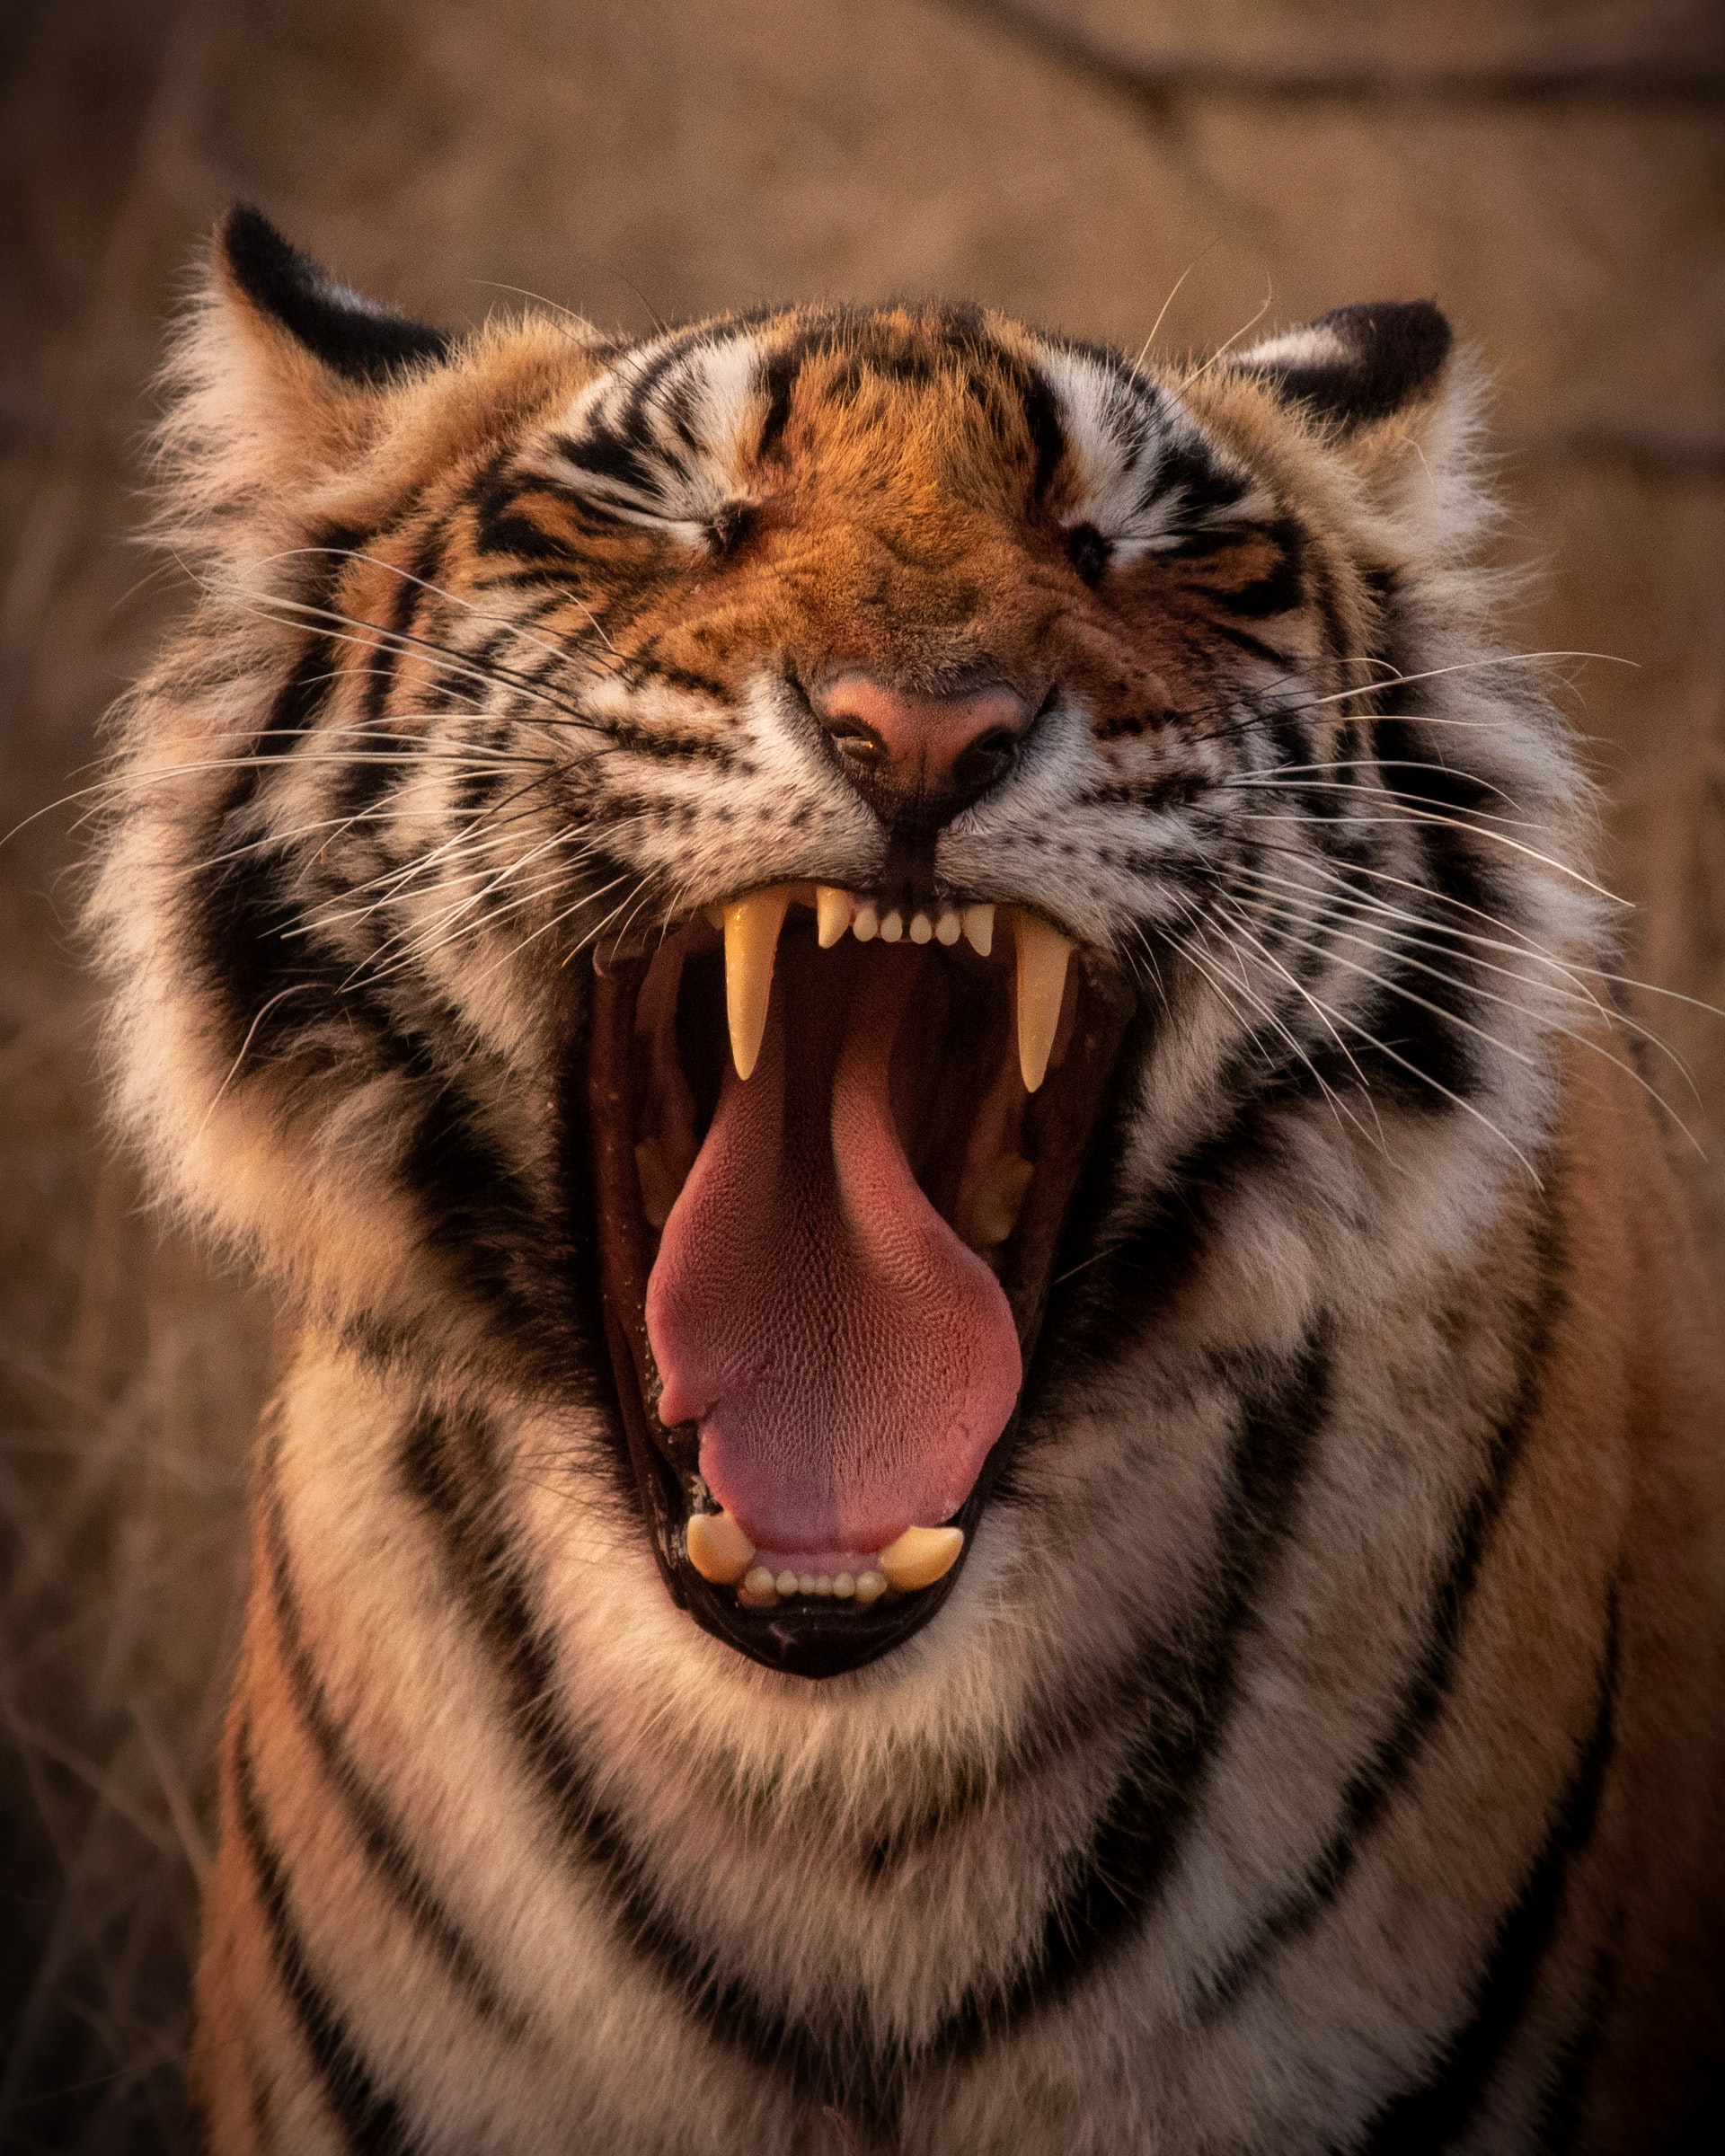 24 óra alatt tigrist lehet venni a Facebookon